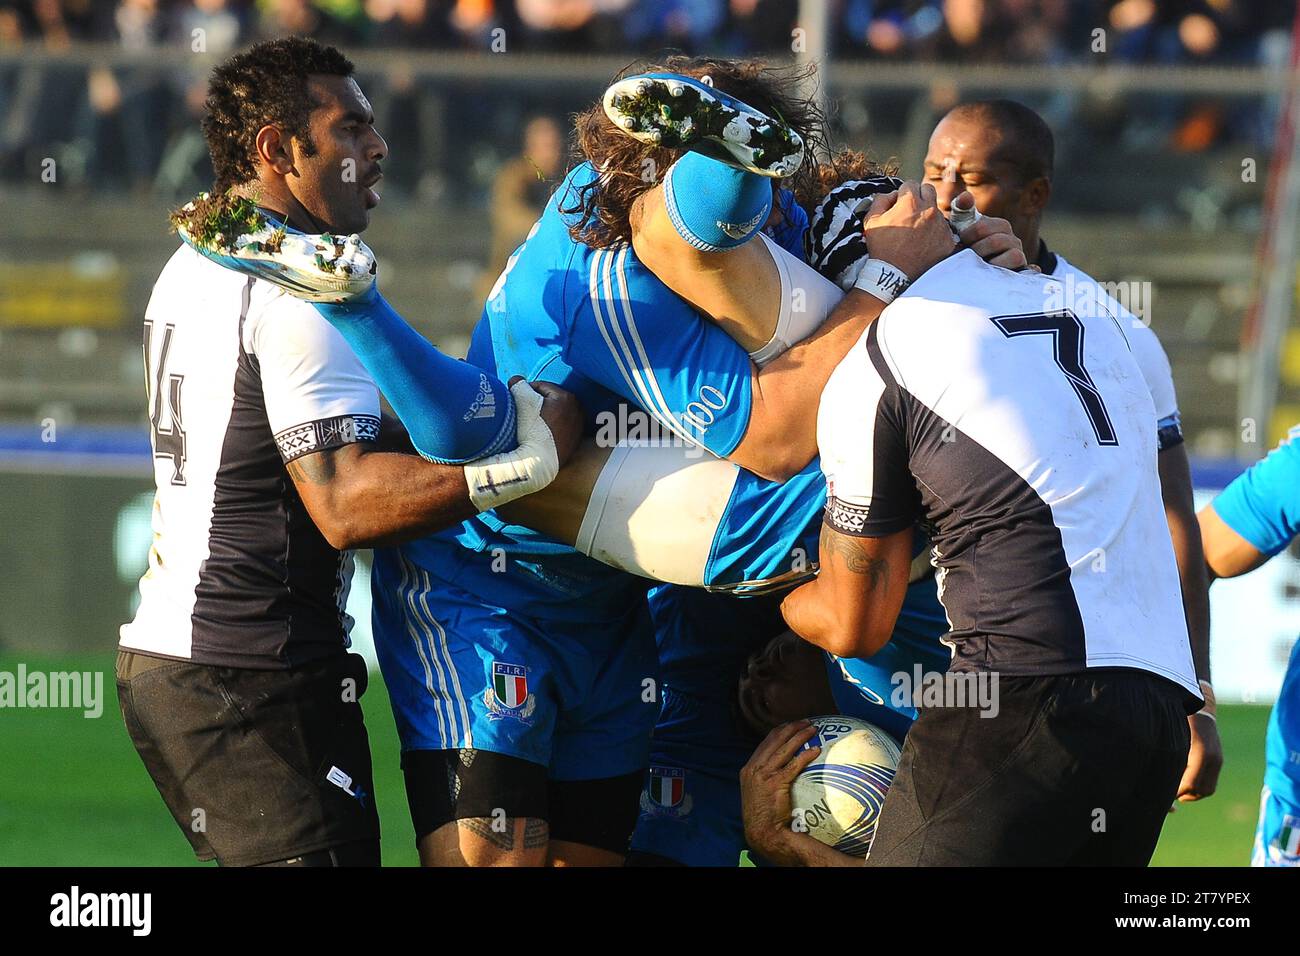 16.11.2013: Cremona, Rugby zweites Testspiel Italien gegen Fidschi Edoardo Gori aus Italien wird von Akapusi Qera aus Fidschi mit Gewalt angegriffen - Foto Massimo Cebrelli / DPPI Stockfoto